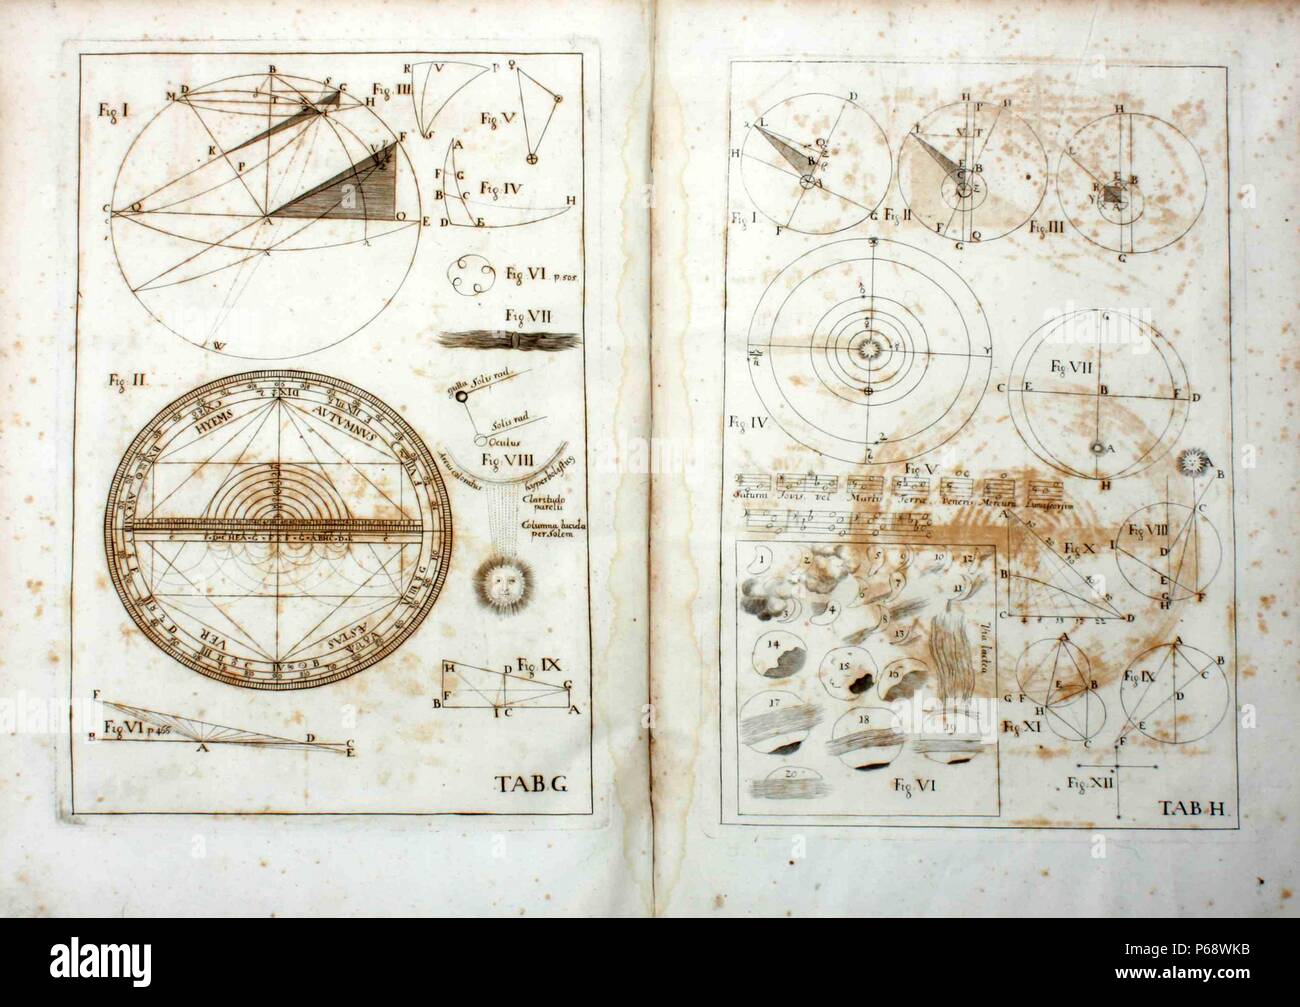 1571 Johannes Kepler - Novembre 15, 1630), mathématicien allemand, astronome et astrologue. Joannis Kepleri aliorumque mutuae epistolae (Kepler's correspondance scientifique, édité par Michael Gottlieb Hansch, qui contient aussi la première biographie de Kepler) 1718 Banque D'Images